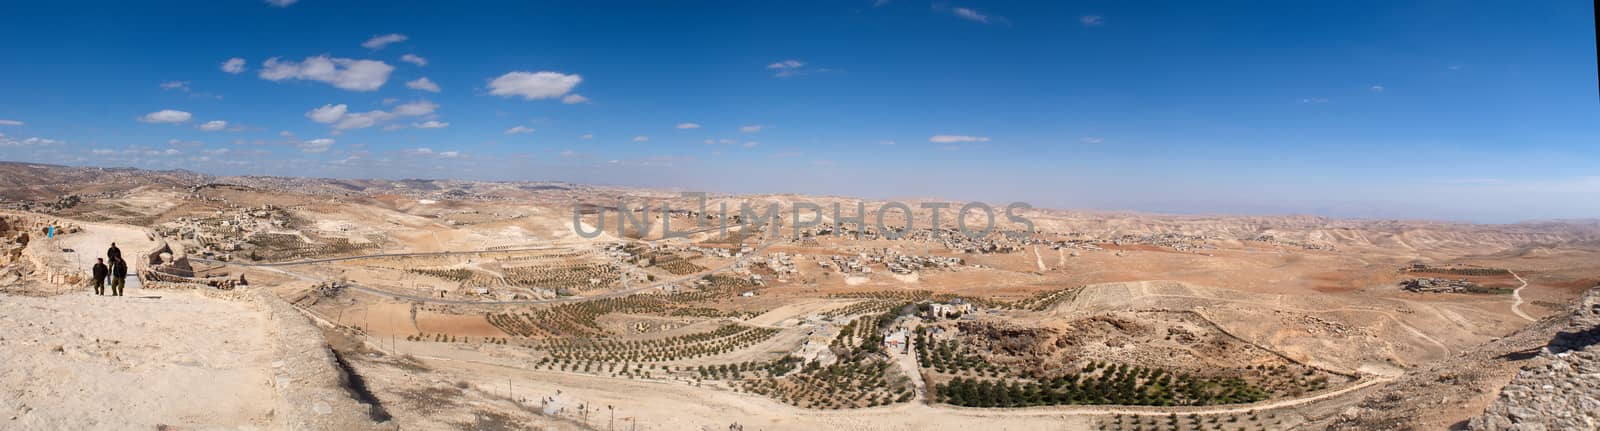 Israel Palestine panorama by javax